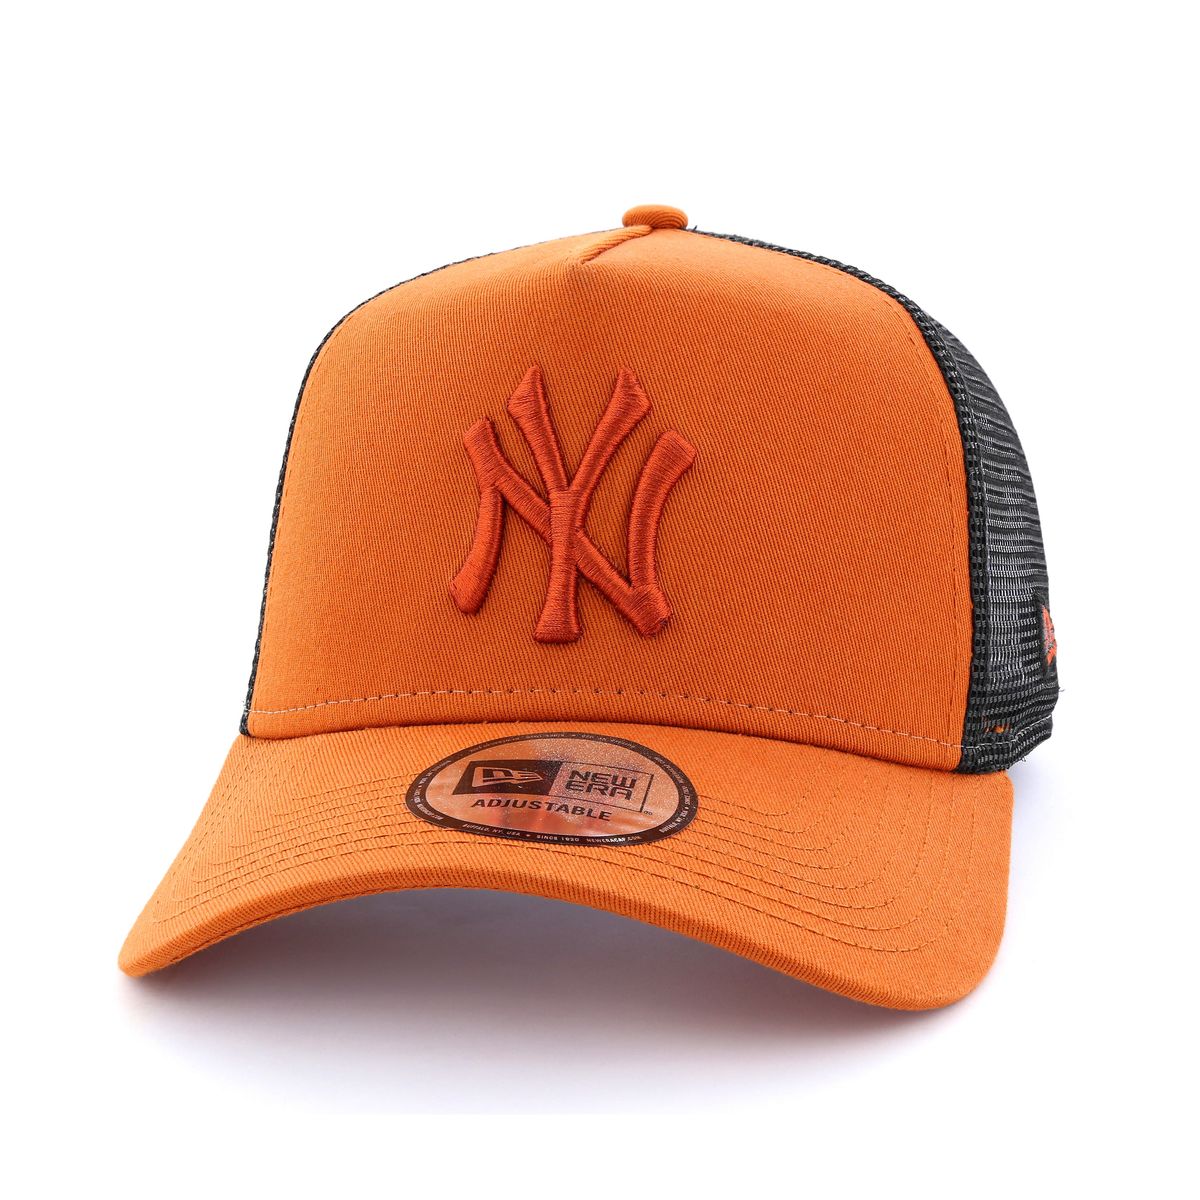 New Era League Estl New York Yankees Men's Cap Rust/Copper